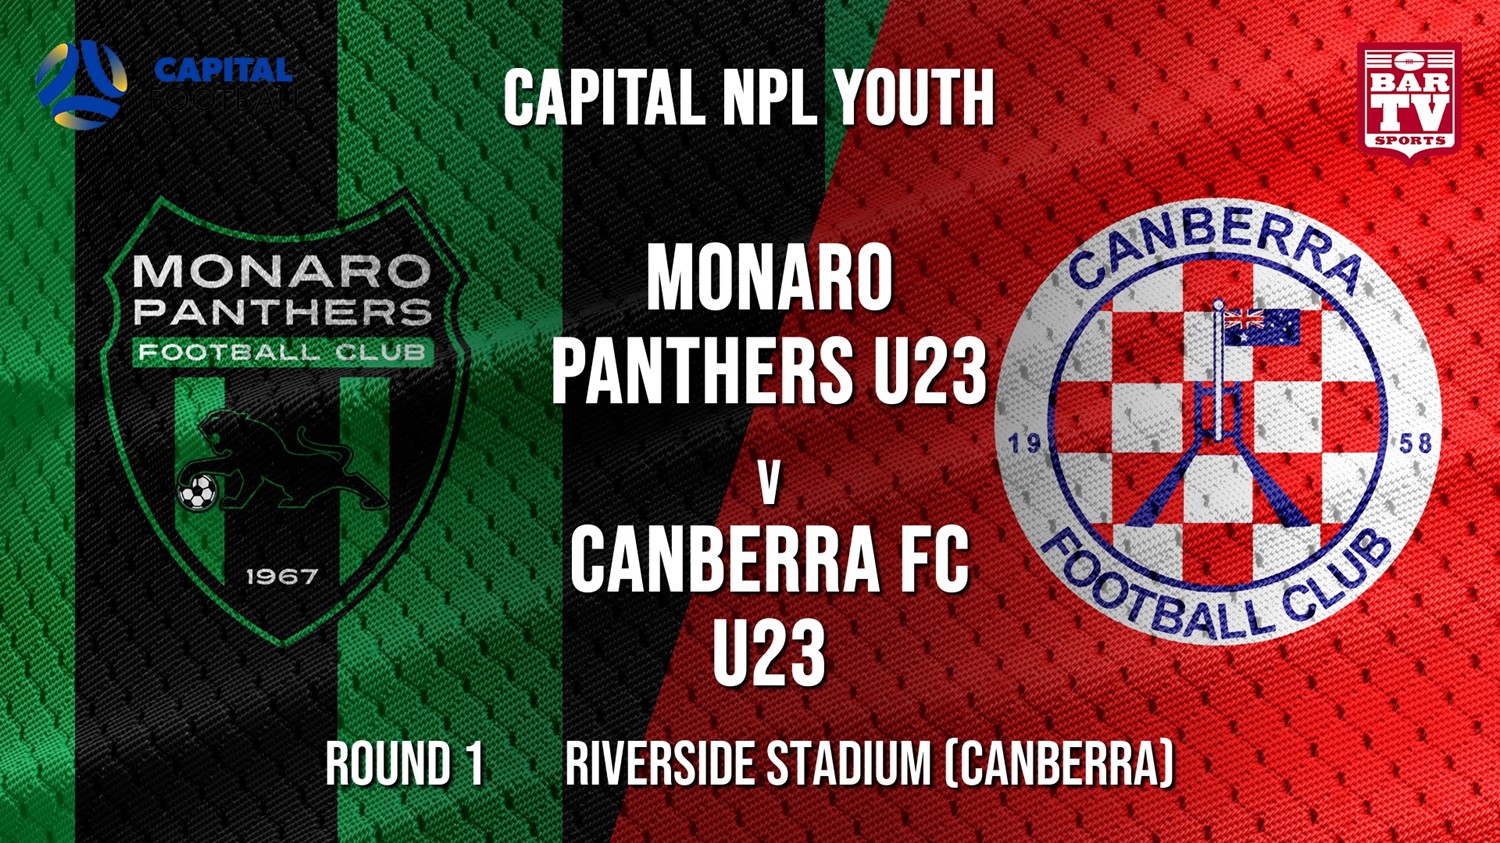 NPL Youth - Capital Round 1 - Monaro Panthers U23 v Canberra FC U23 Minigame Slate Image